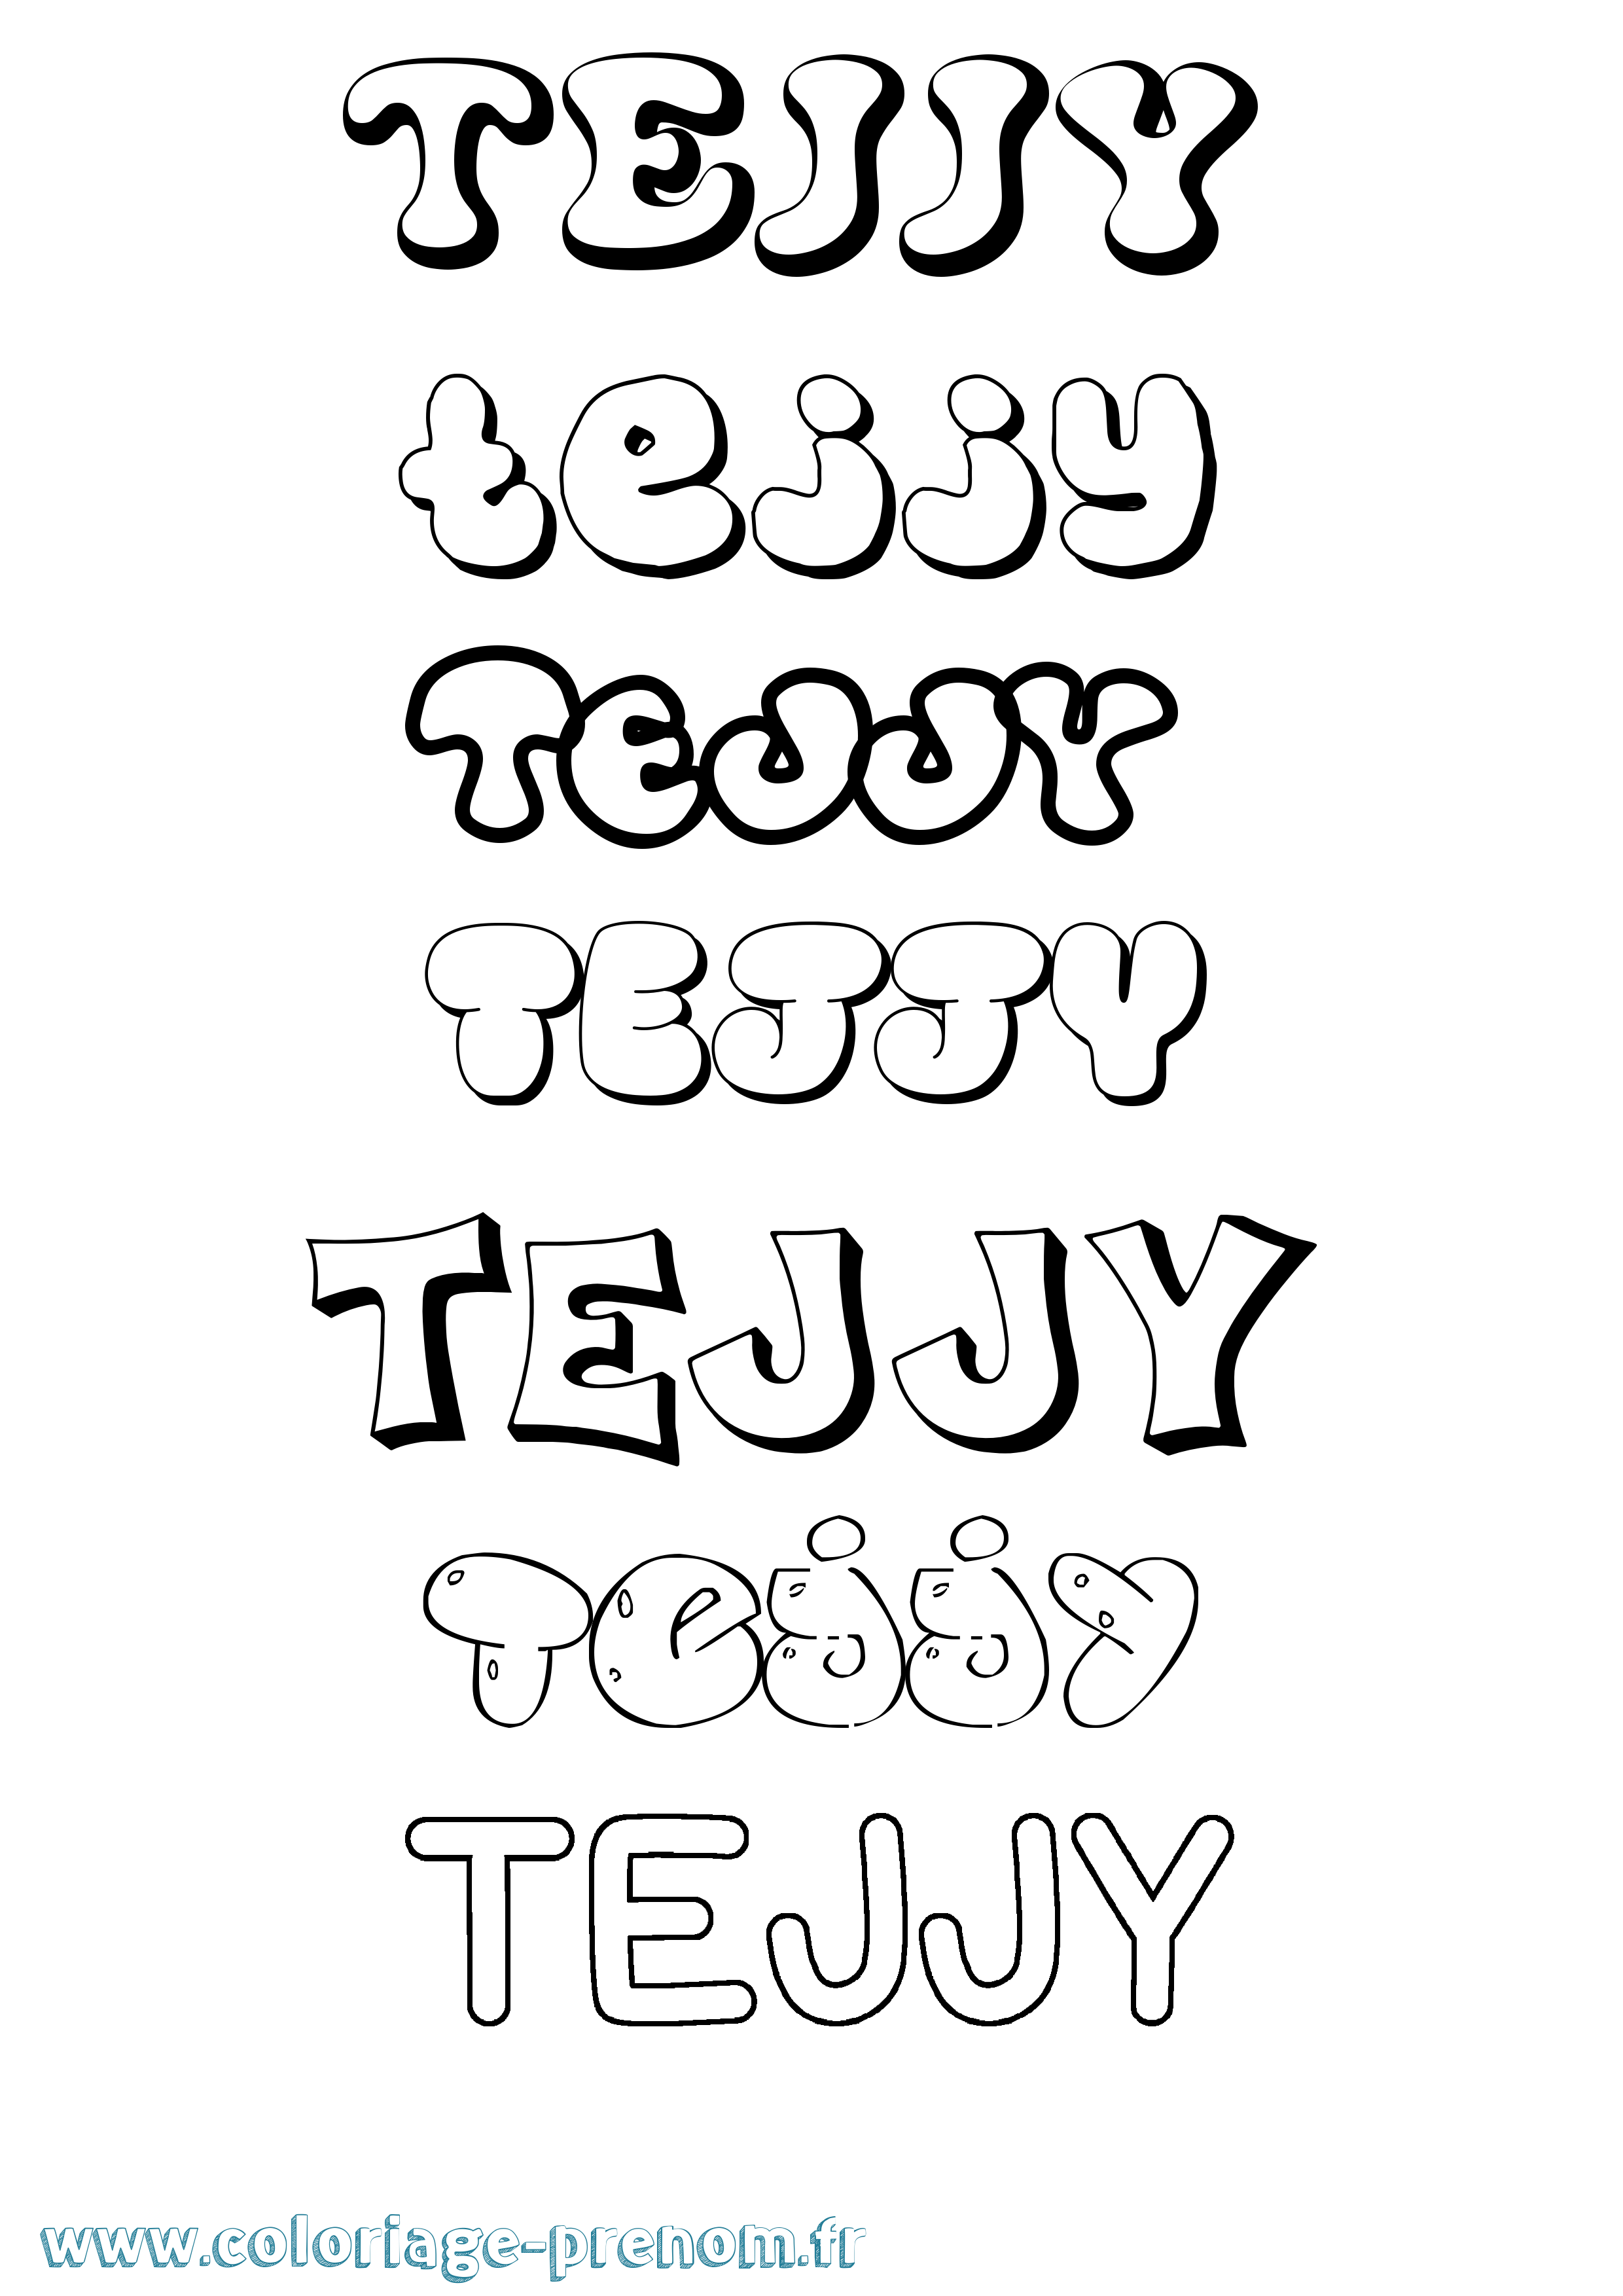 Coloriage prénom Tejjy Bubble